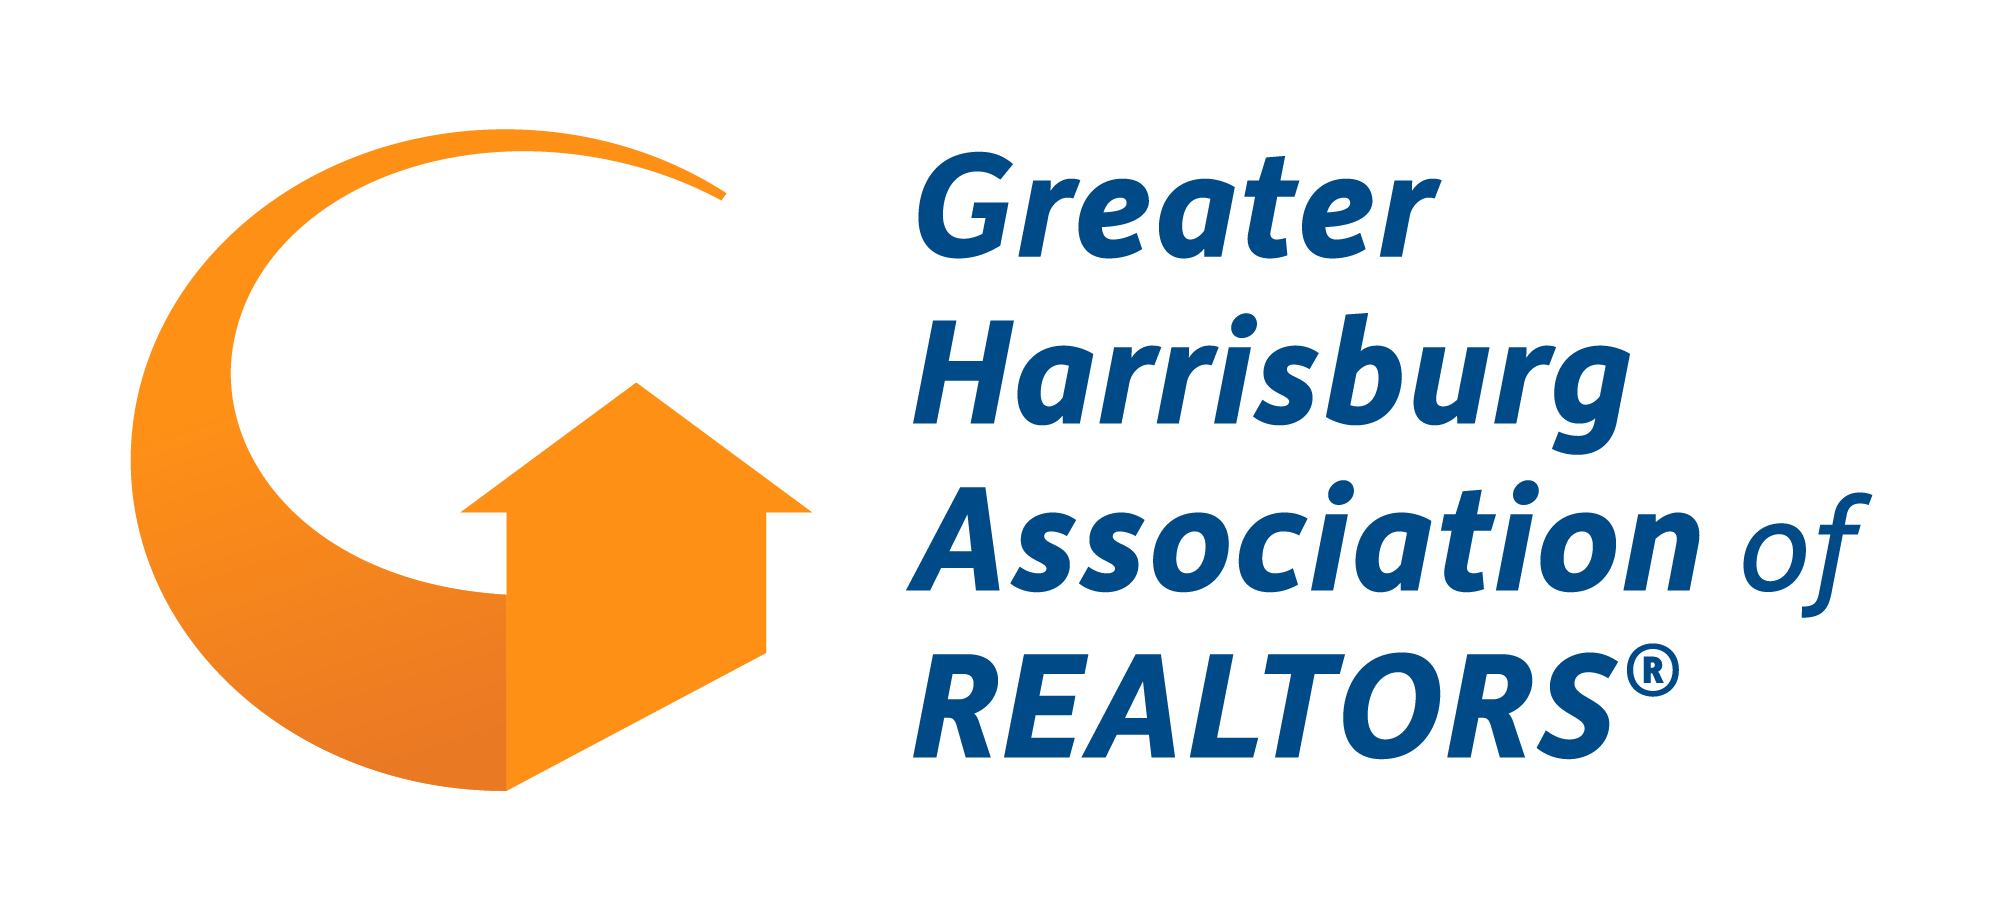 greater harrisburg association of realtors logo